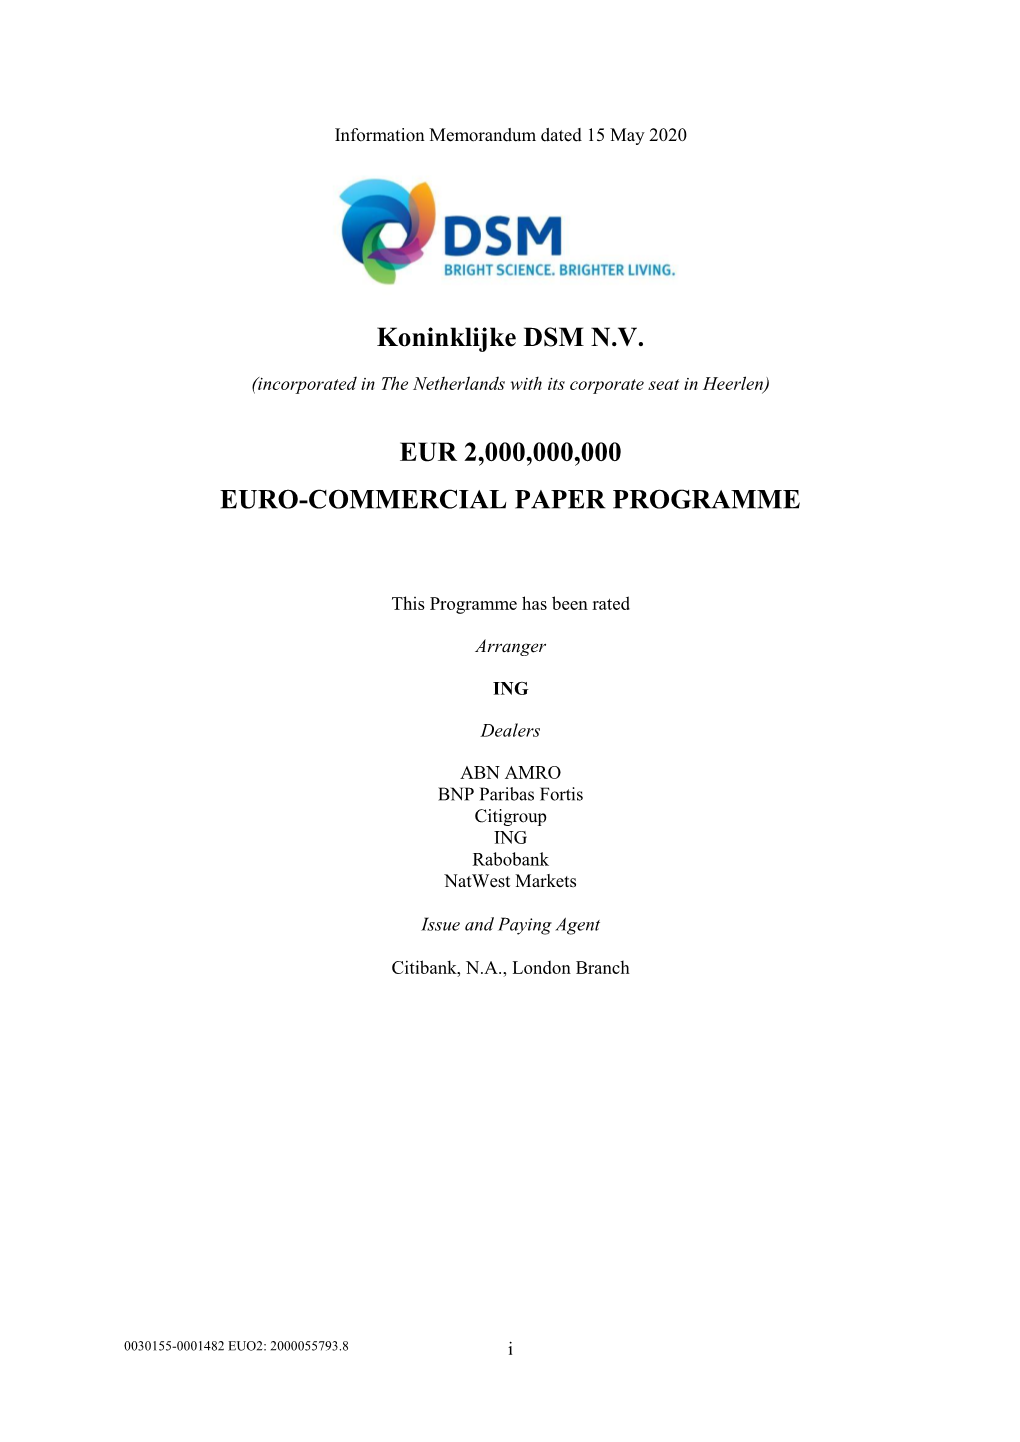 Koninklijke DSM N.V. €2 Billion Euro Commercial Paper Programme Memorandum